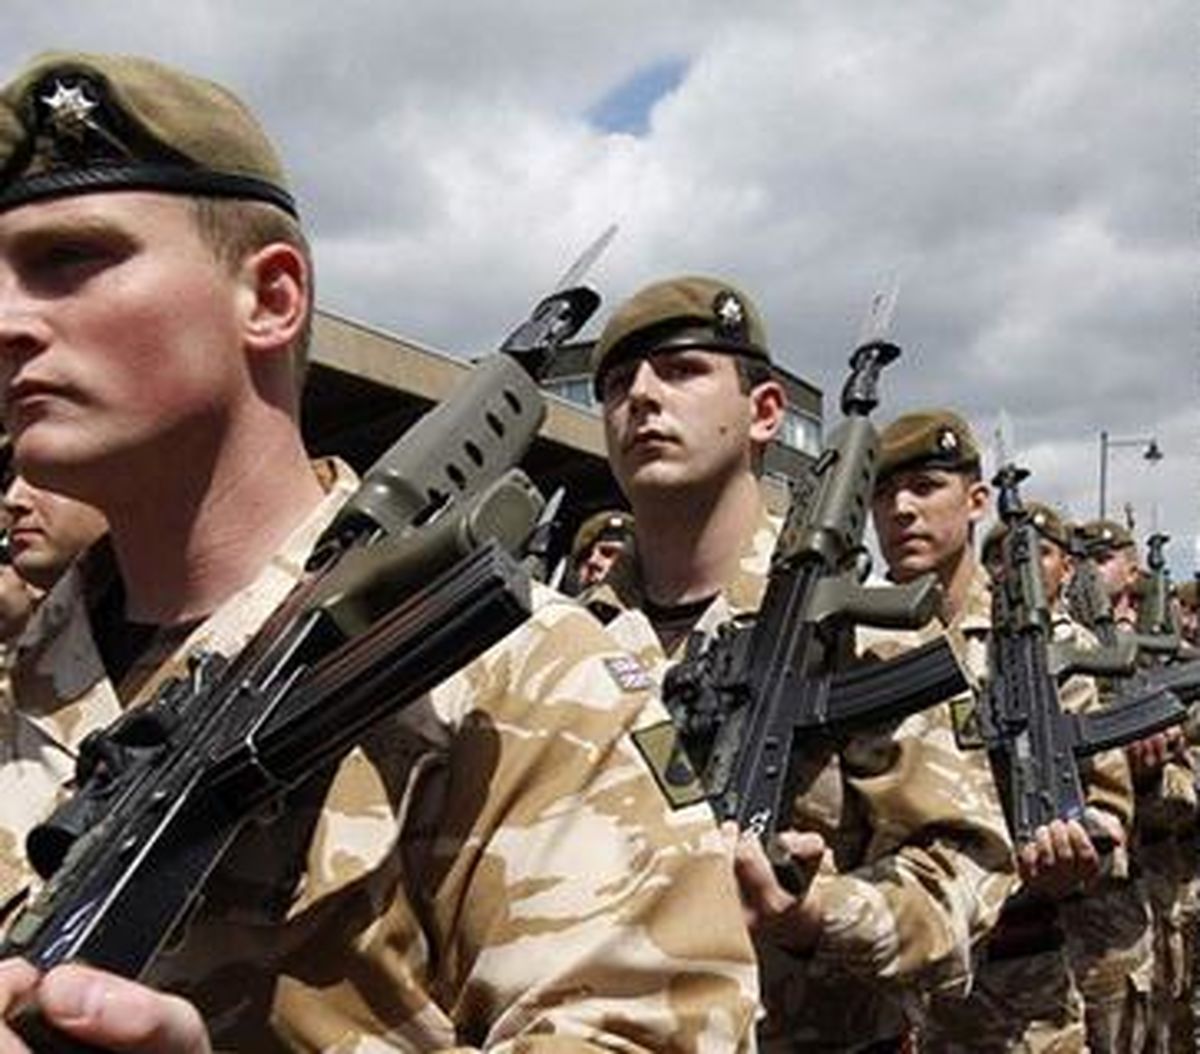 نیروهای ارتش انگلیس توانای دفاع از این کشور را ندارند